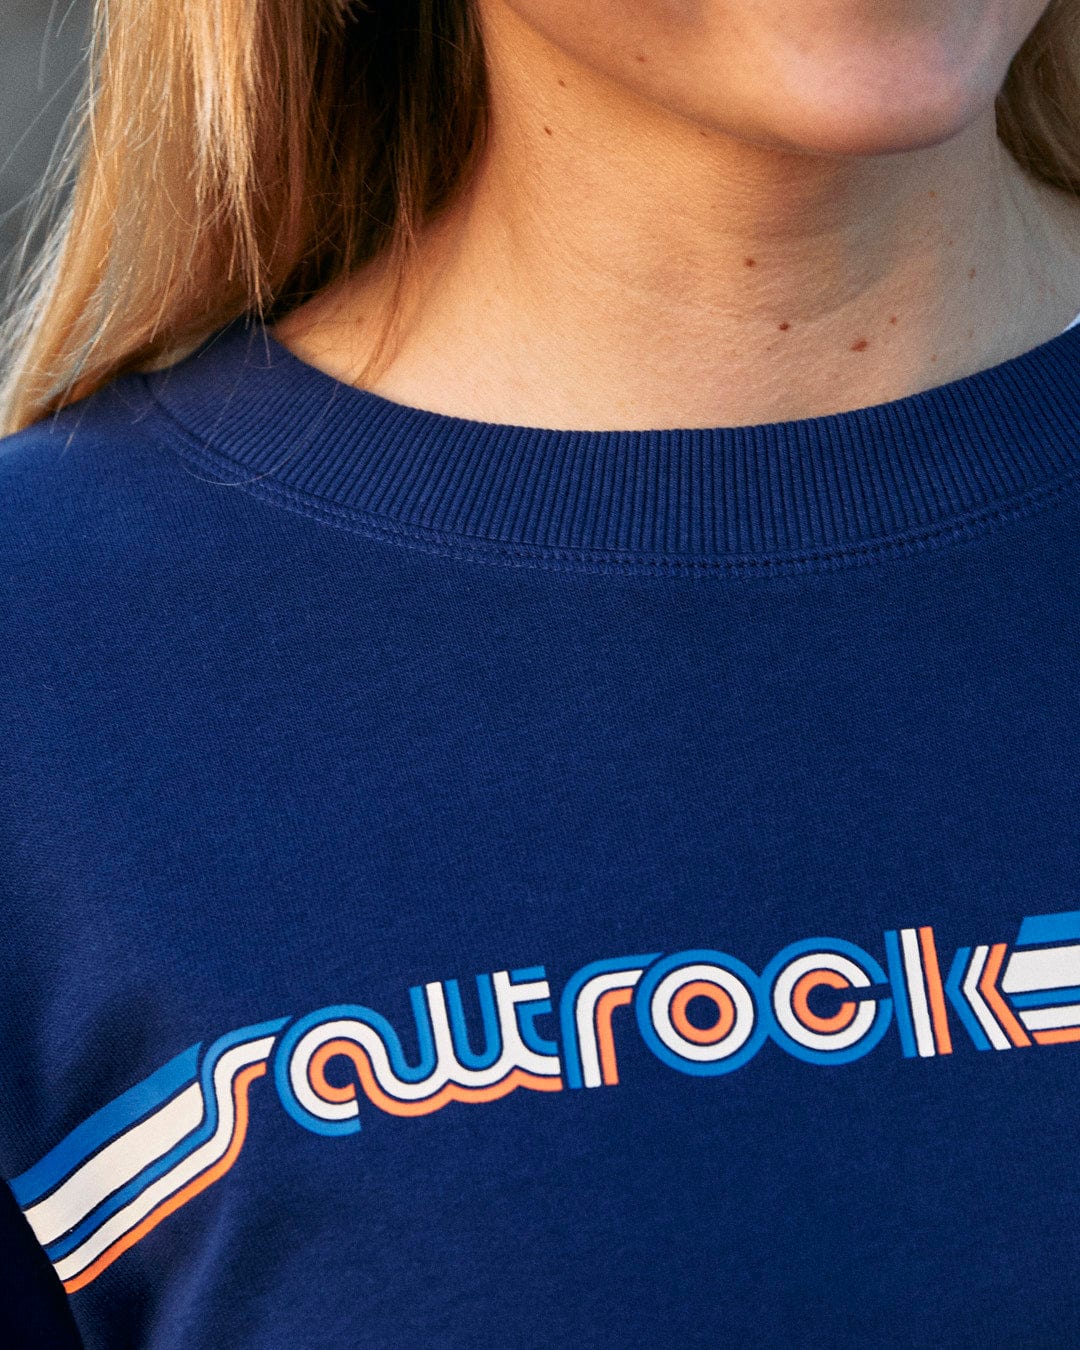 A woman wearing a Retro Ribbon - Womens Sweat - Blue sweatshirt with the Saltrock branding on it.